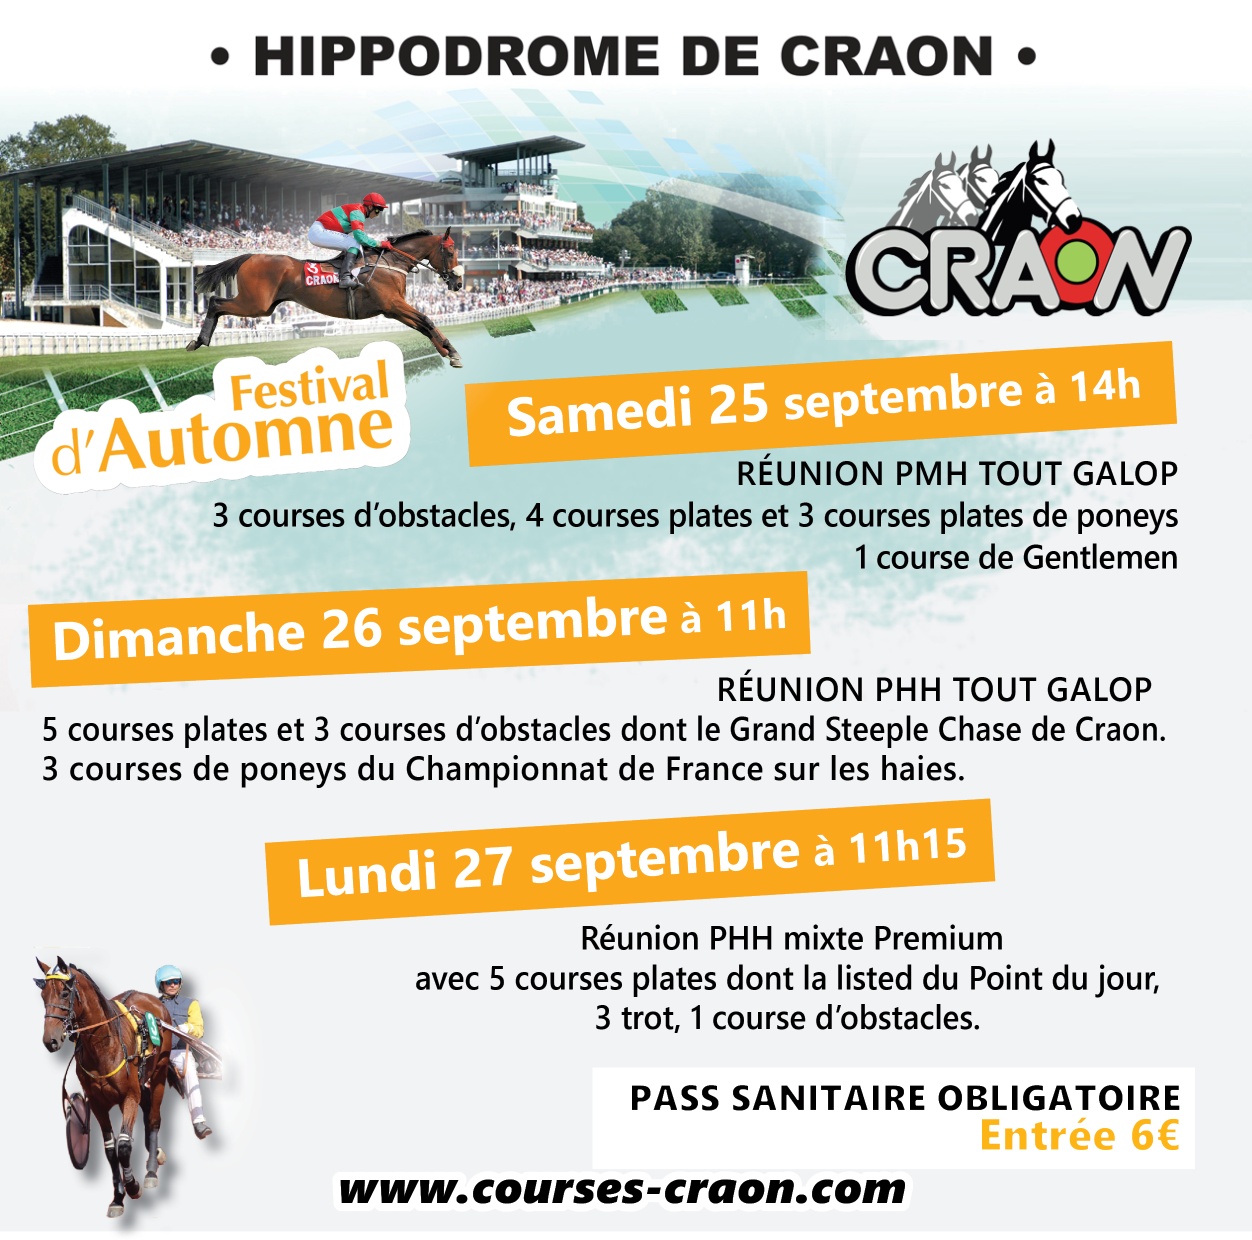 Festival d'Automne - Hippodrome de Craon